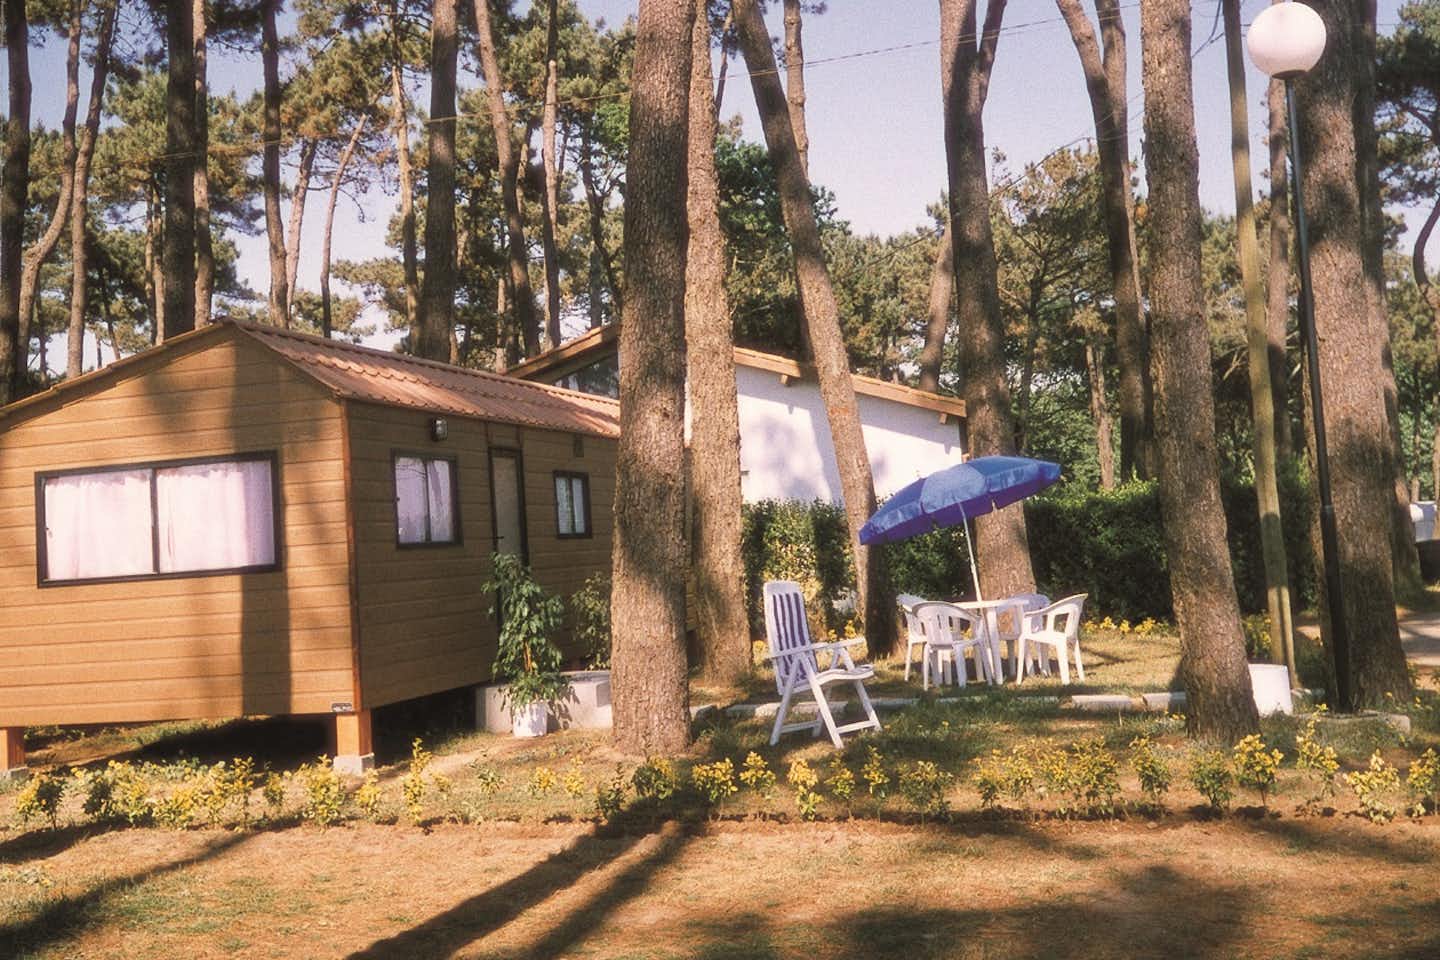 Camping ORBITUR Angeiras - Bungalow zwischen Bäumen mit Sitzgelegenheiten